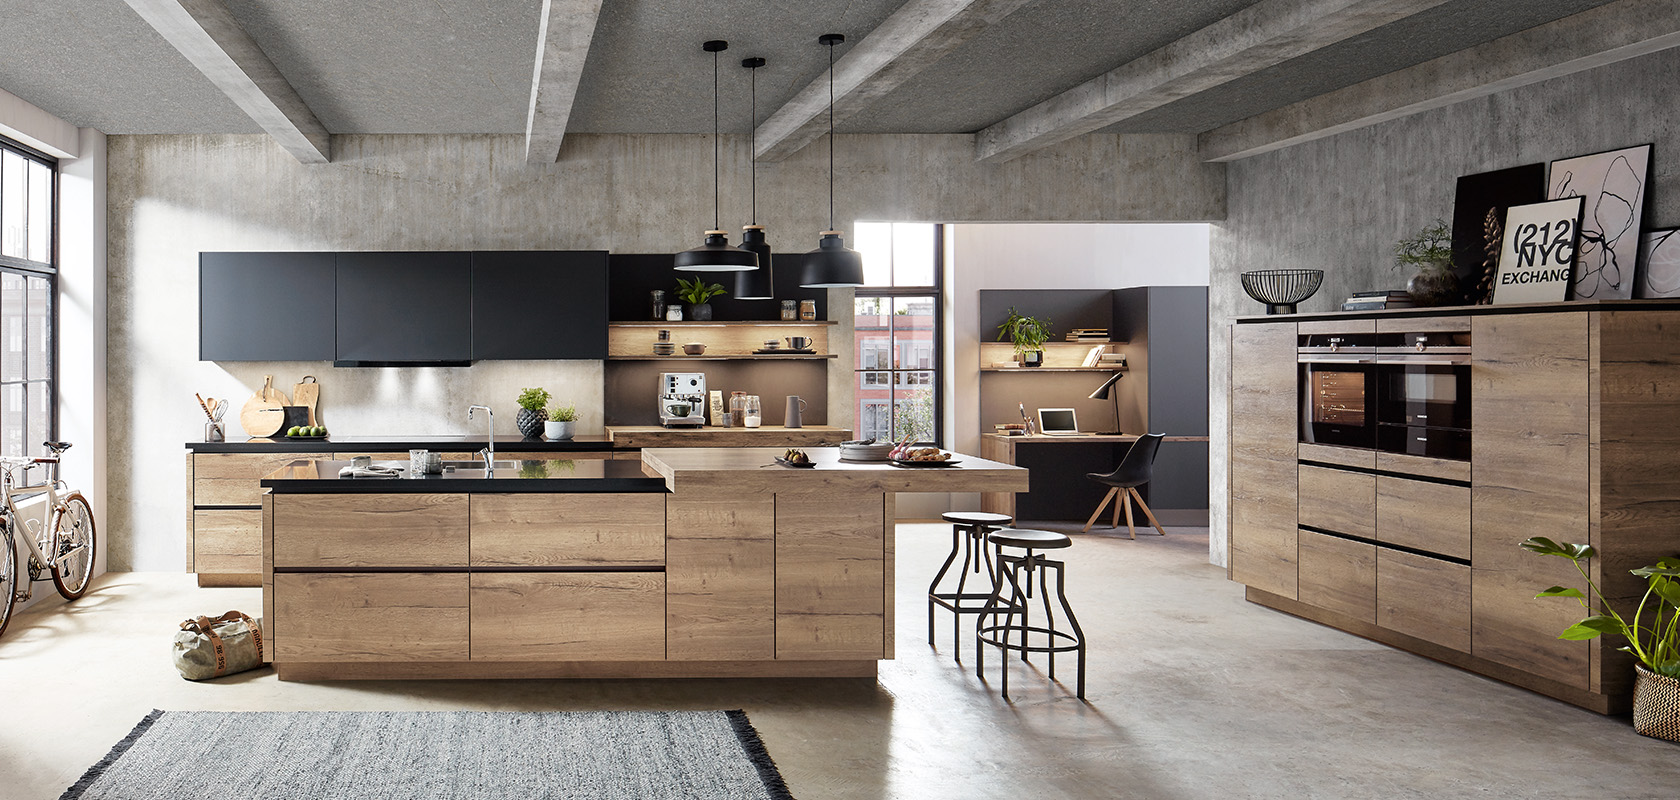 Moderne Kücheninnenräume, die eine Kombination aus industriellen und rustikalen Stilen mit Holzakzenten, Edelstahlgeräten und einem schicken Frühstückstresen präsentieren.